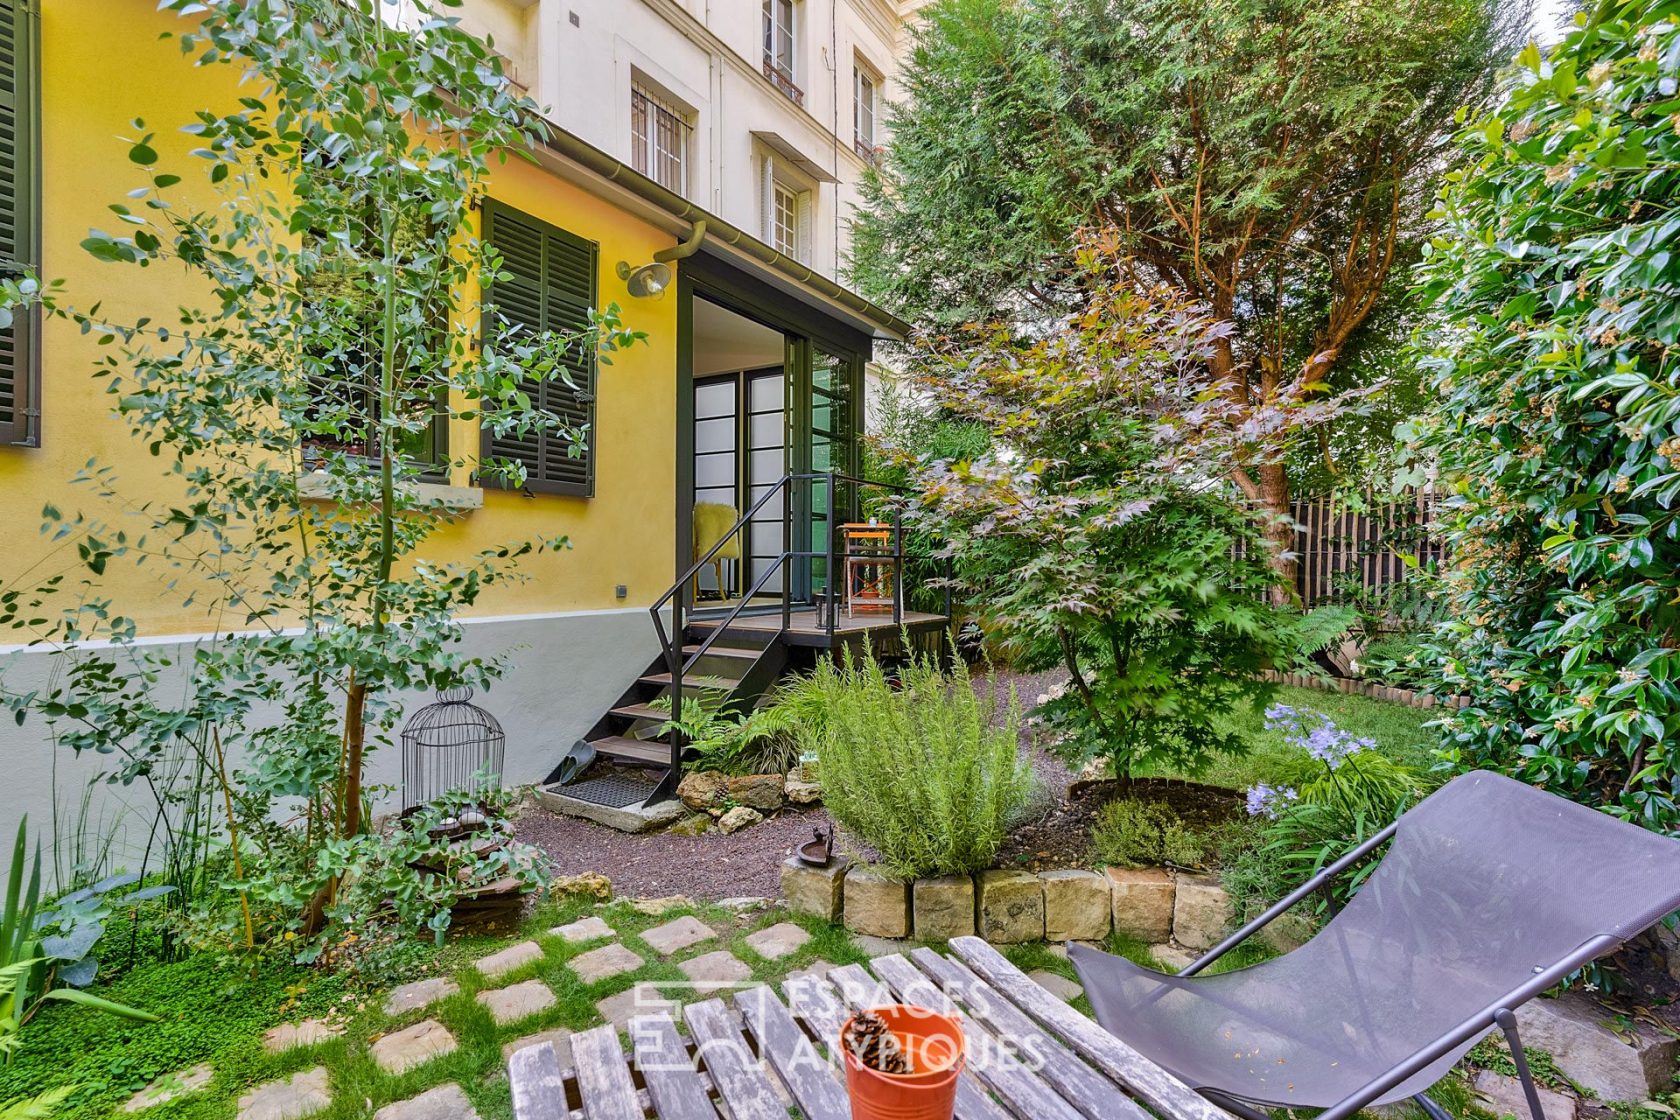 Contemporary apartment with garden